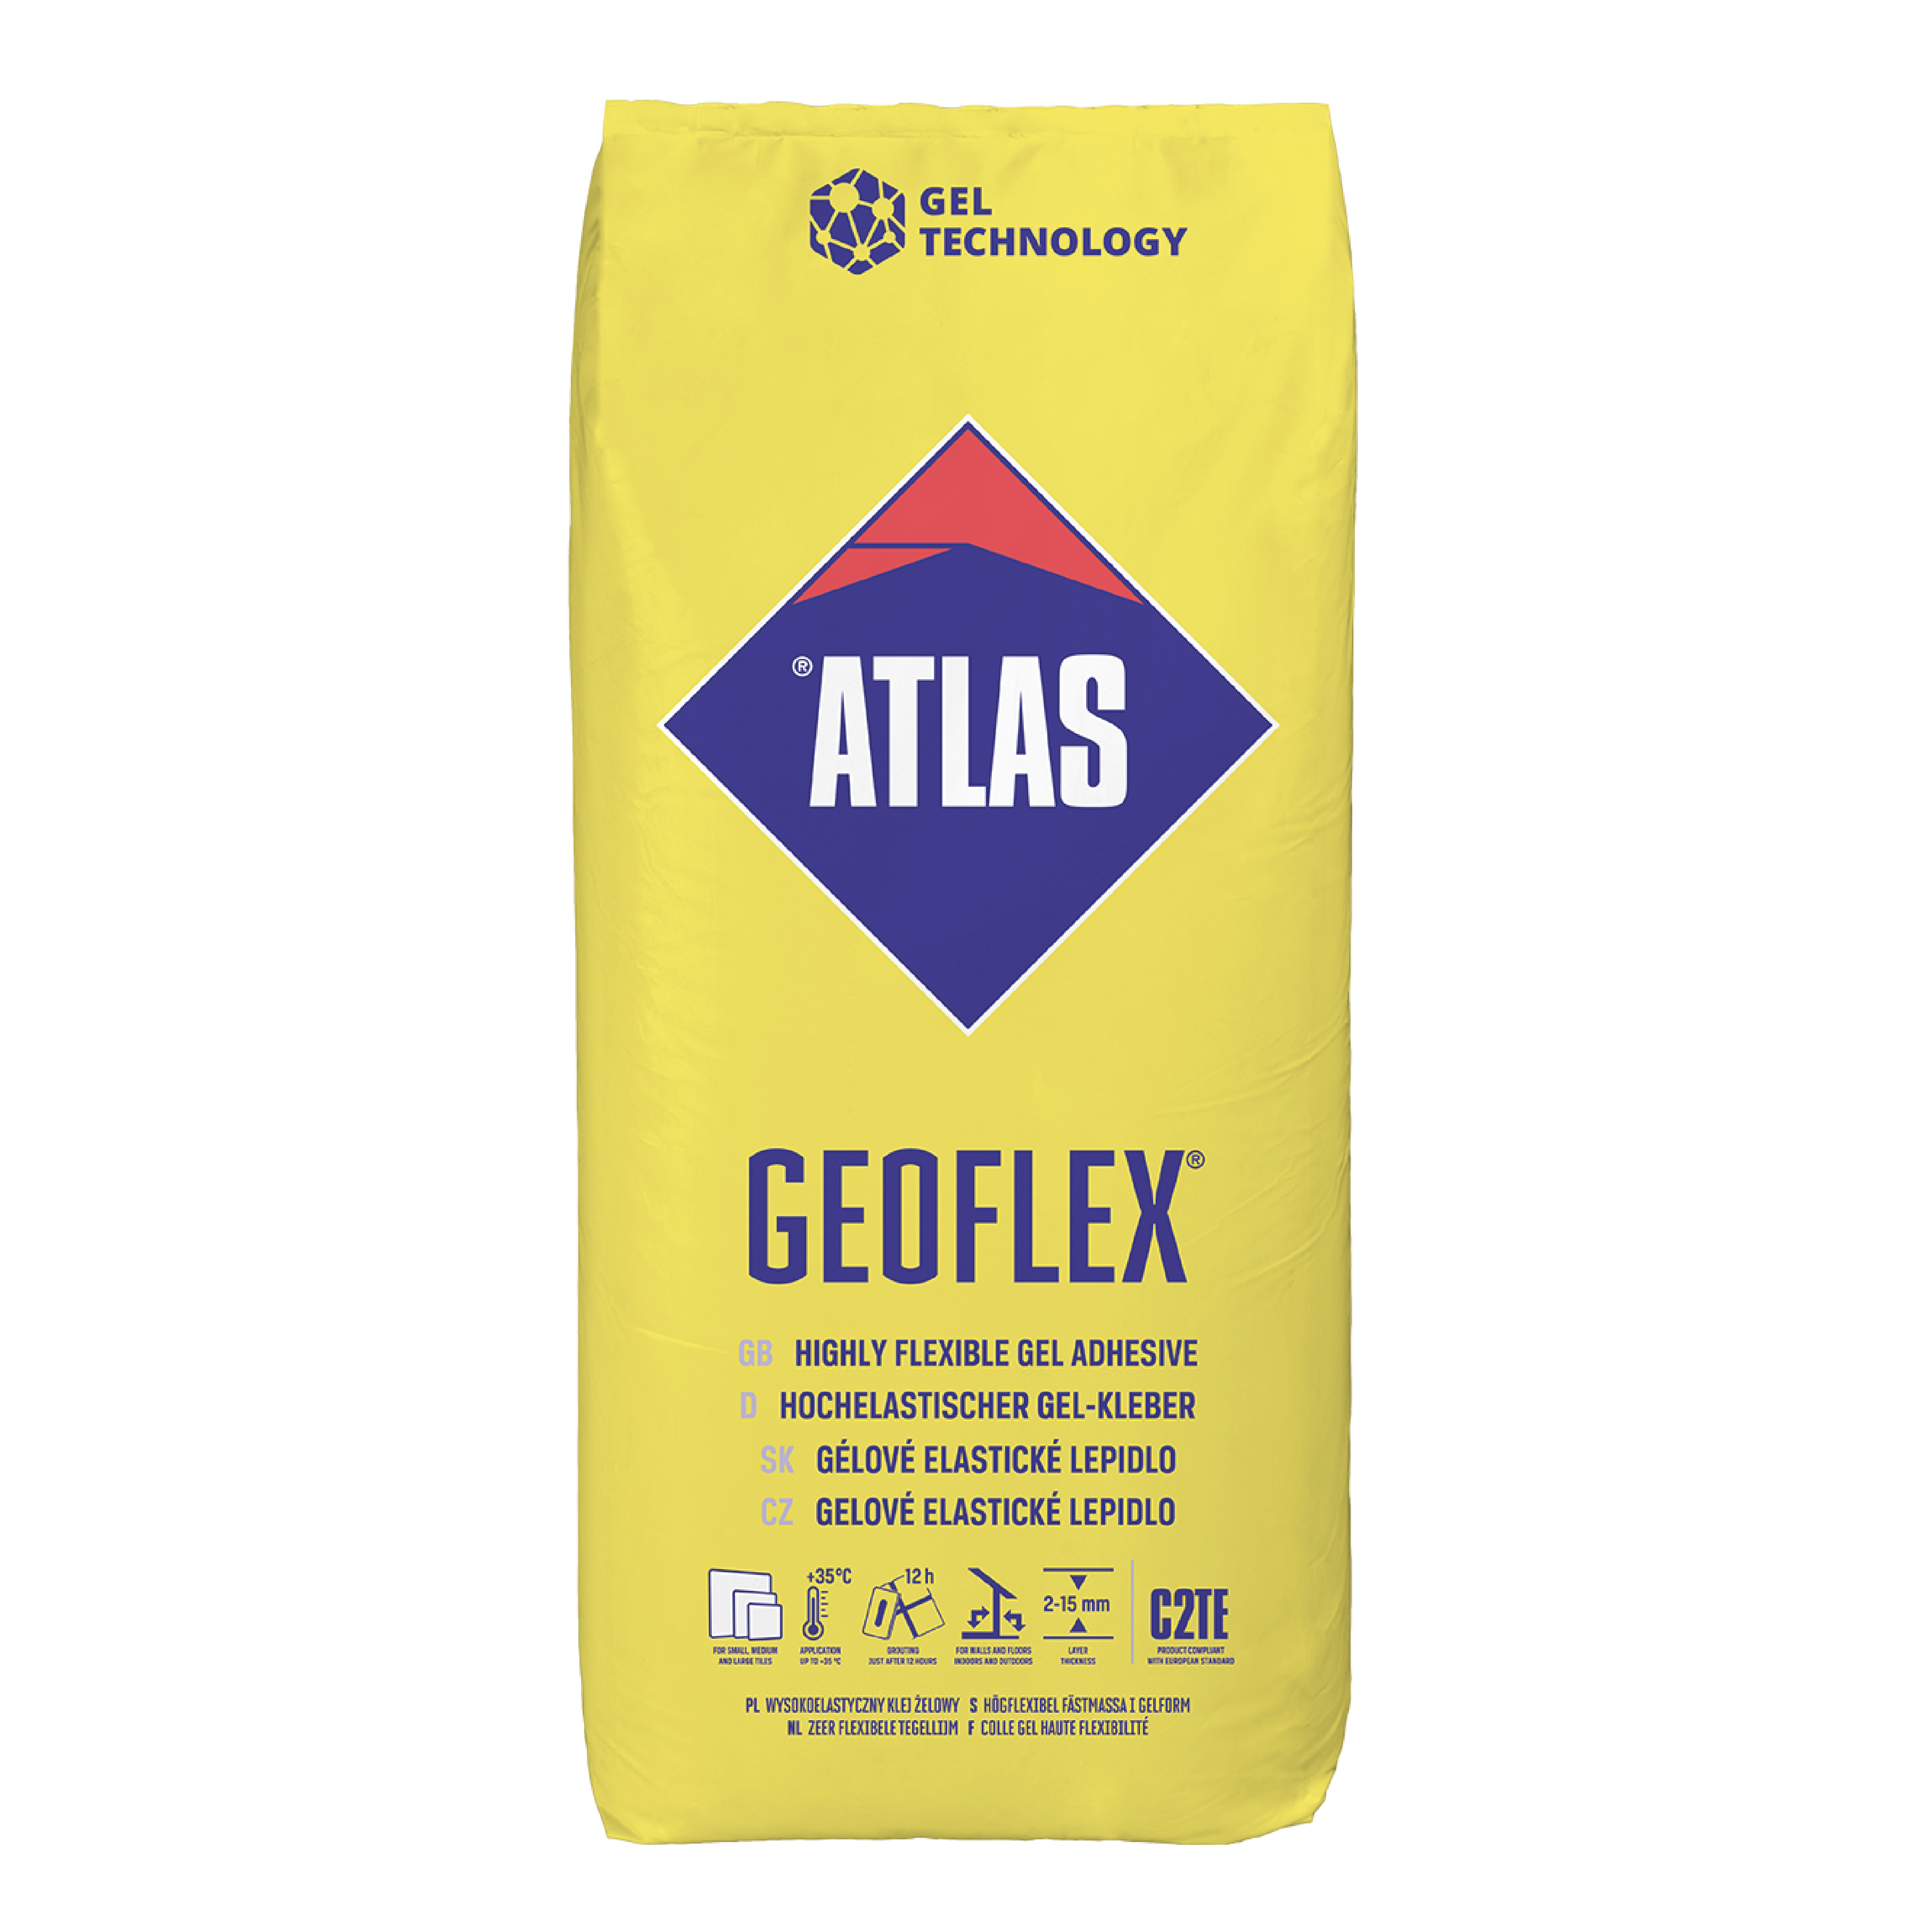 Atlas Geoflex zeer flexibele tegellijm 25 KG (C2TE 2-15 mm)